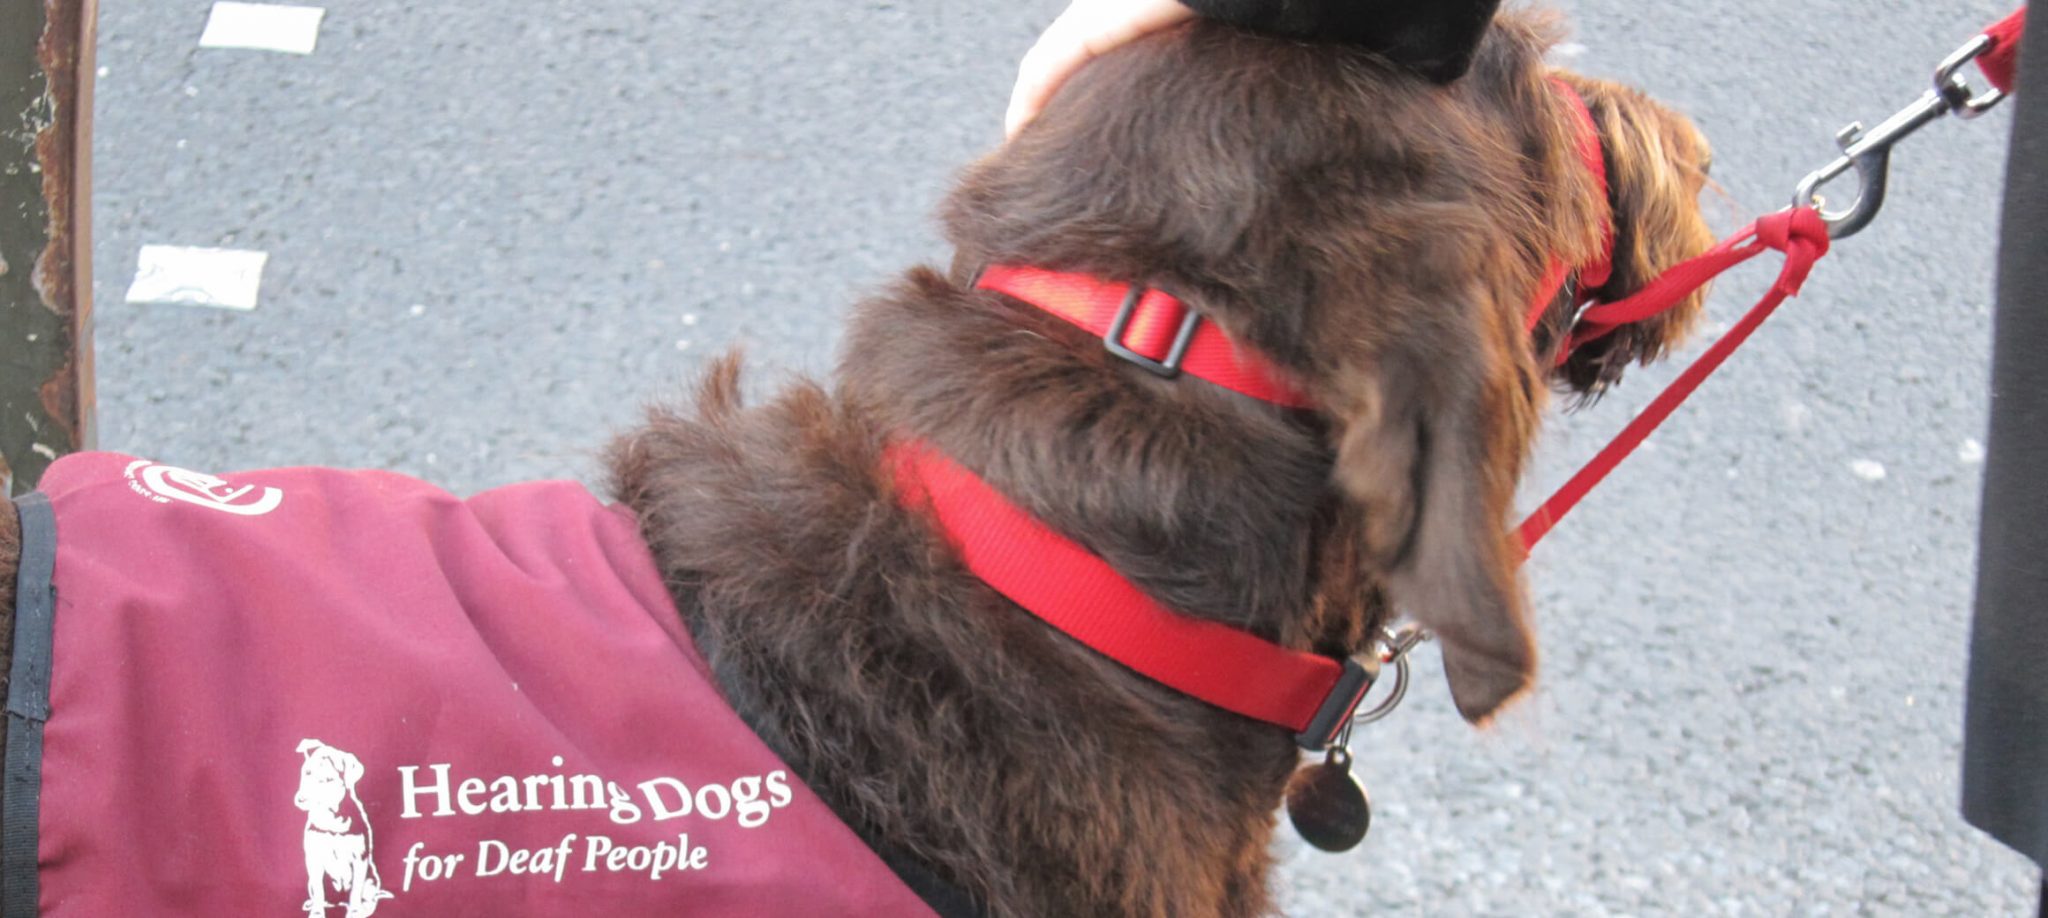 Ein brauner Hund der ein Geschirr mit der Aufschrift "Hearing dogs for deaf people" (Hörhunde für gehörlose Menschen) trägt, wird am Kopf gestreichelt.